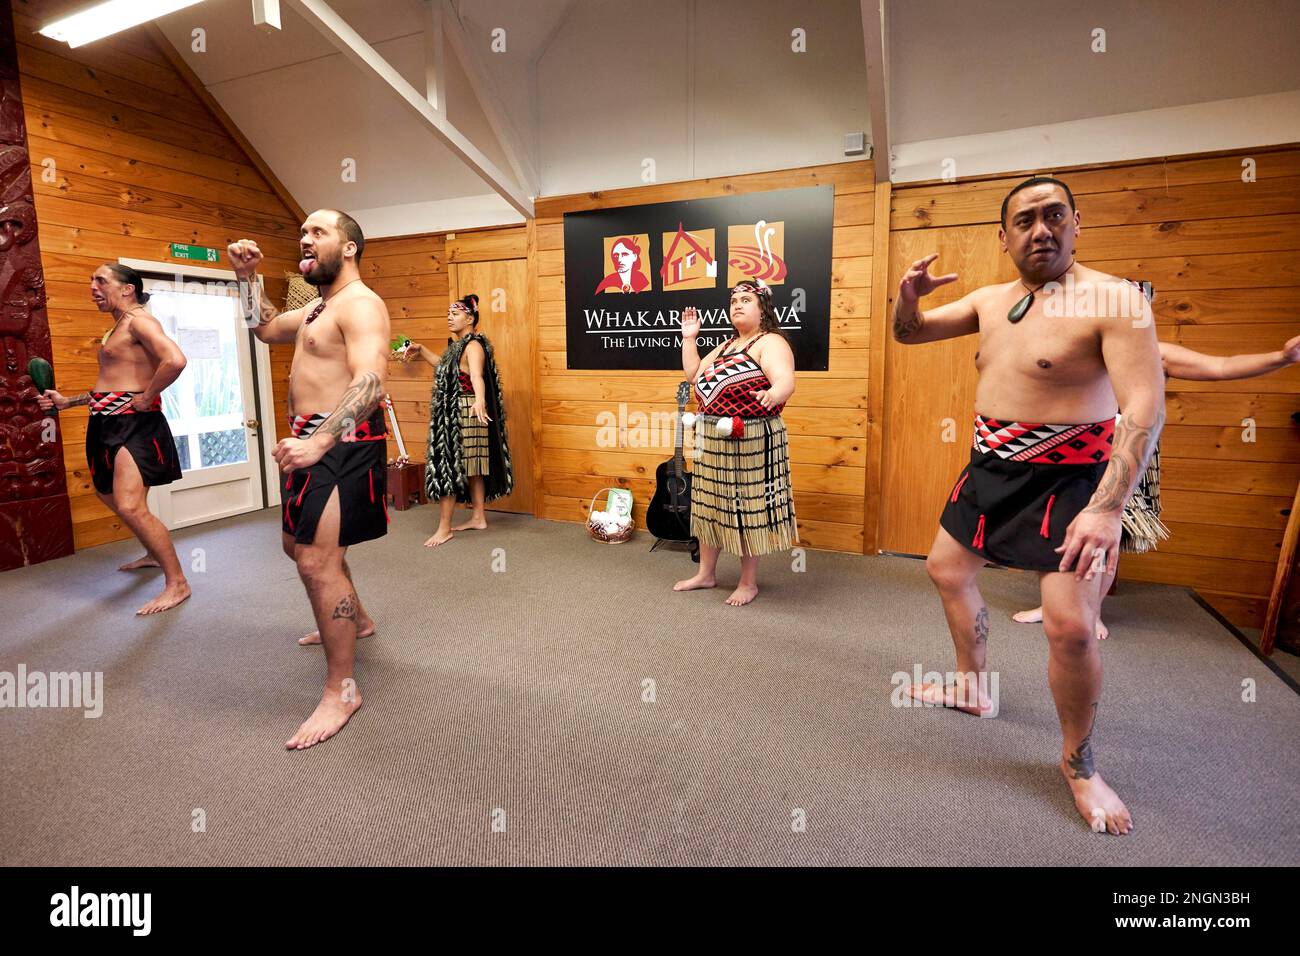 Whakarewarewa villaggio Maori. Haka tradizionale danza delle prestazioni Foto Stock